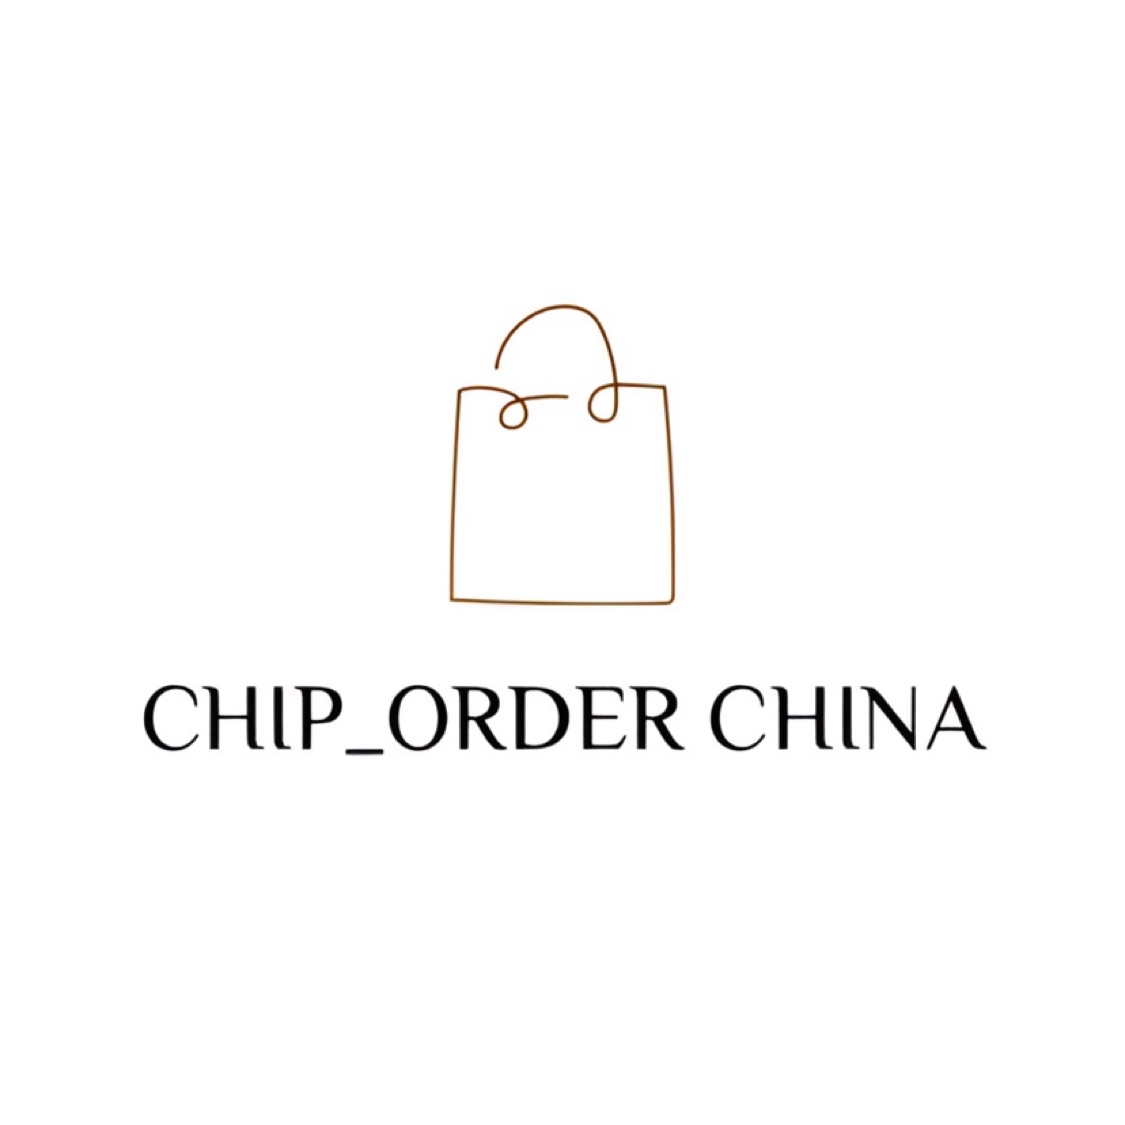 Chip_order china